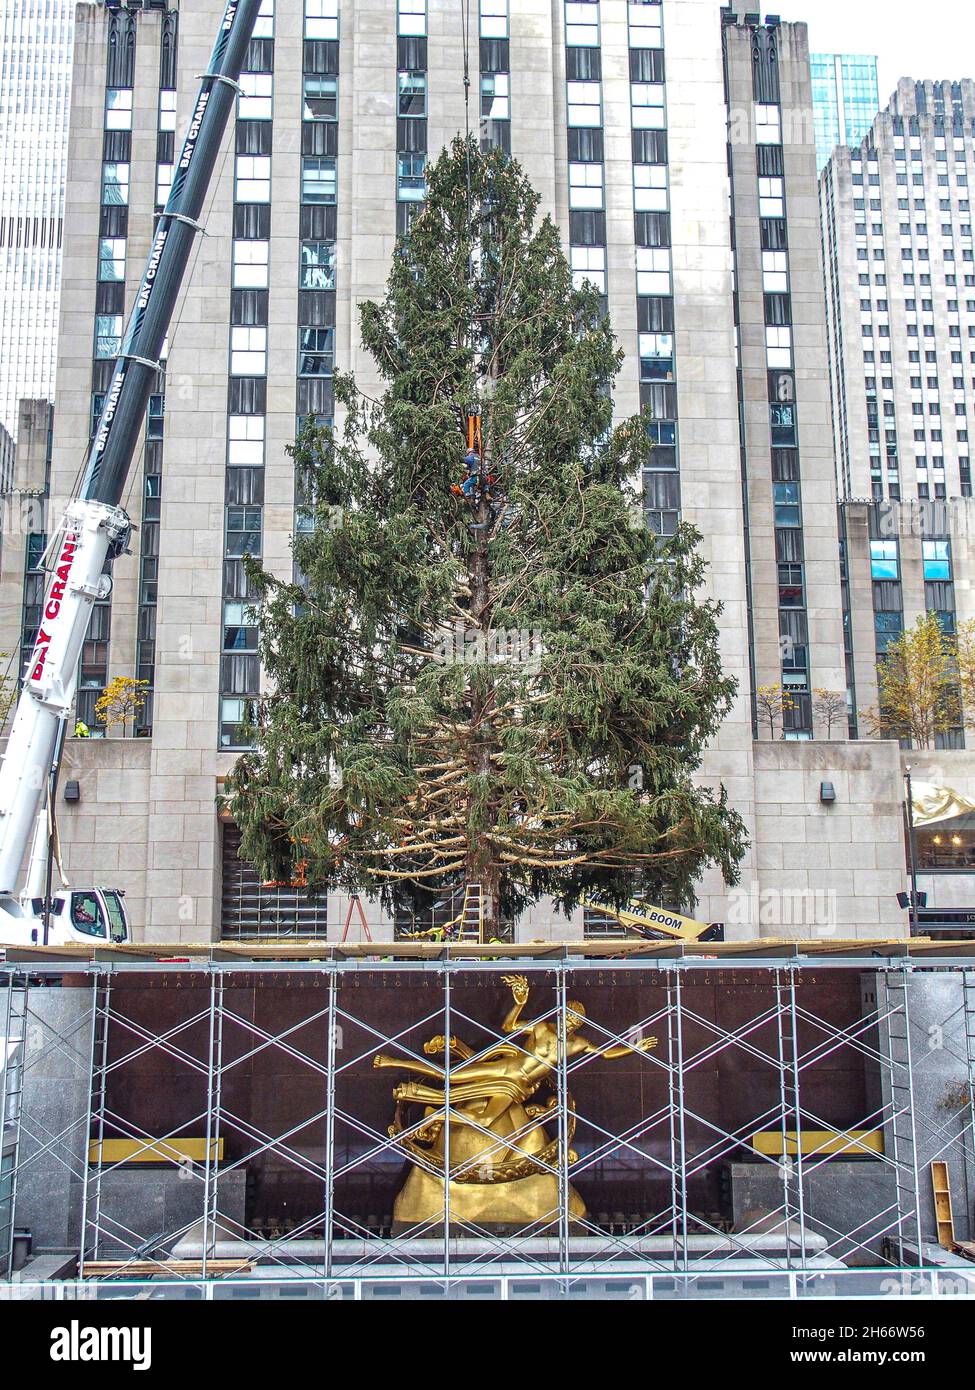 News – York Christmas Trees